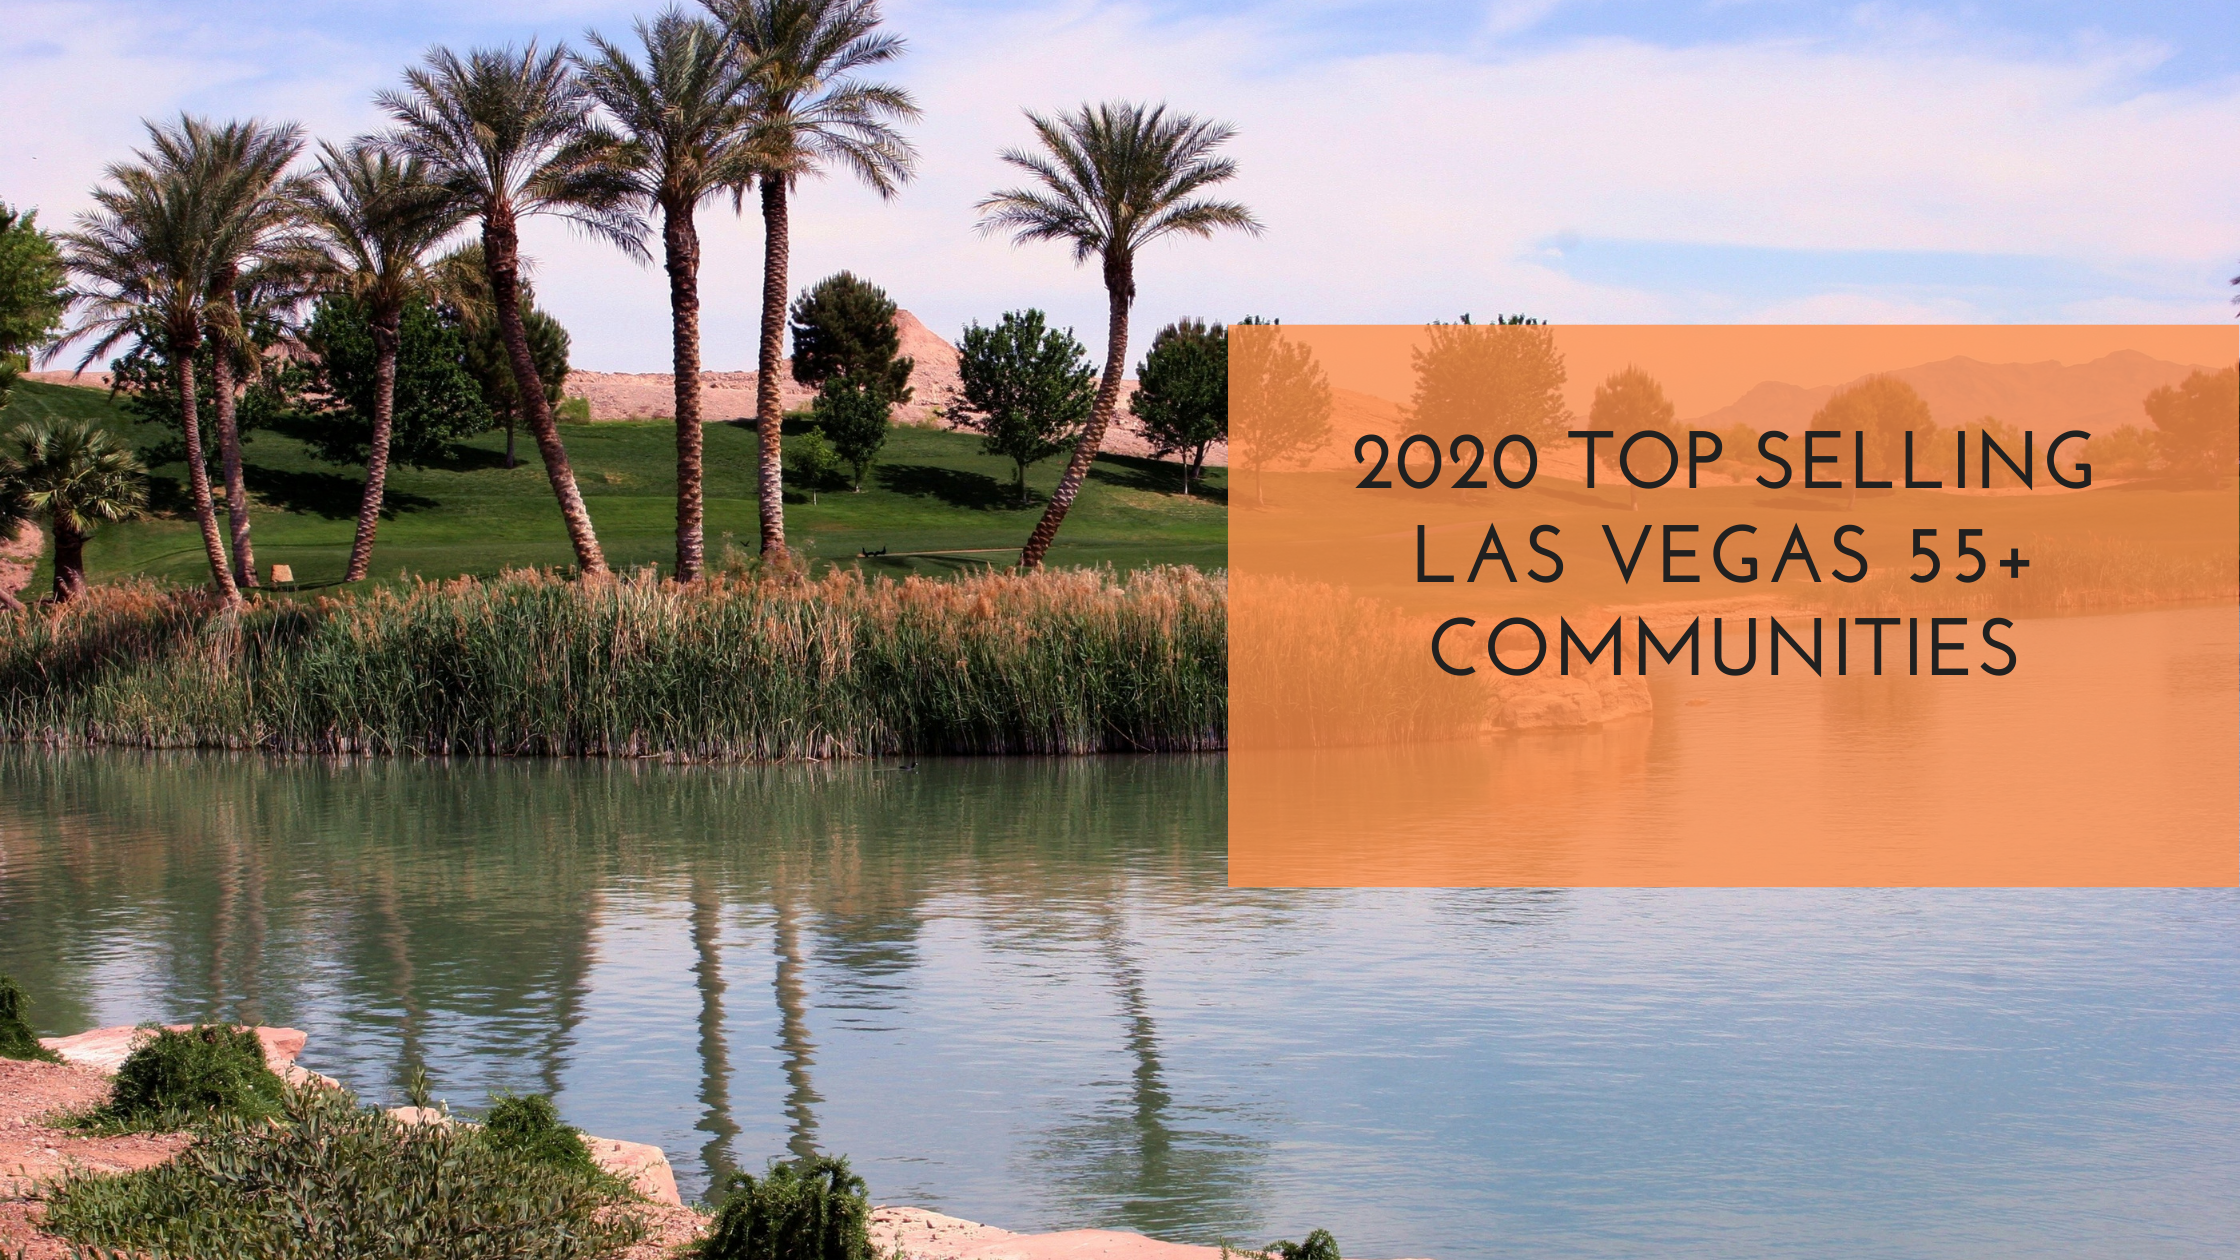 Las Vegas Top Selling 55+ Communities in 2020